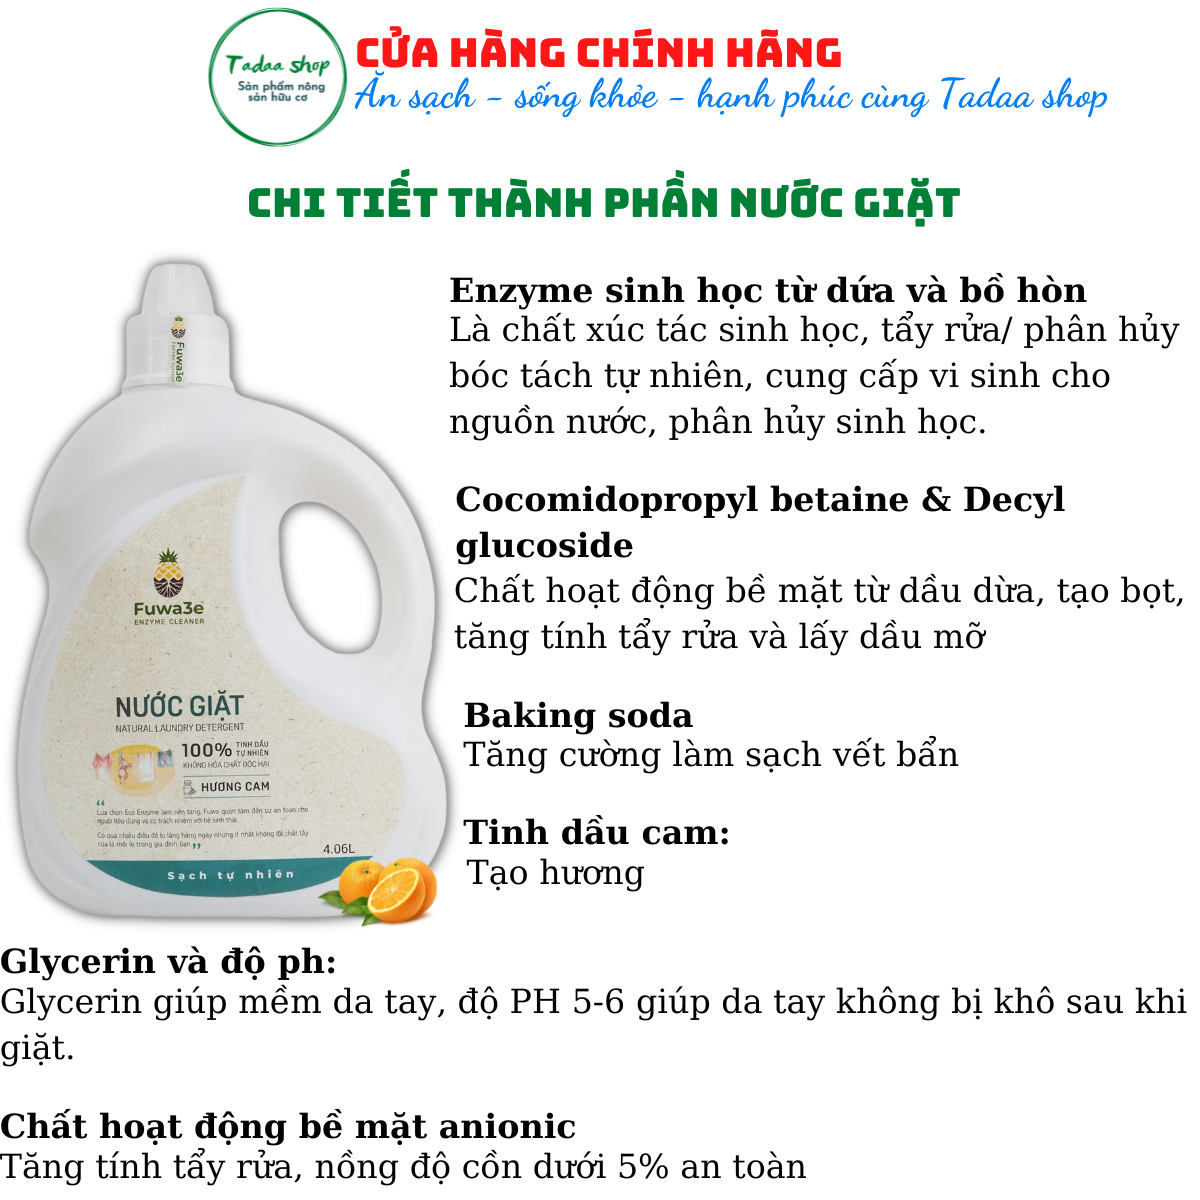 Nước giặt sinh học hữu cơ Fuwa3e tiết kiệm nước, cực sạch, an toàn cho bé hương cam can 4060ml